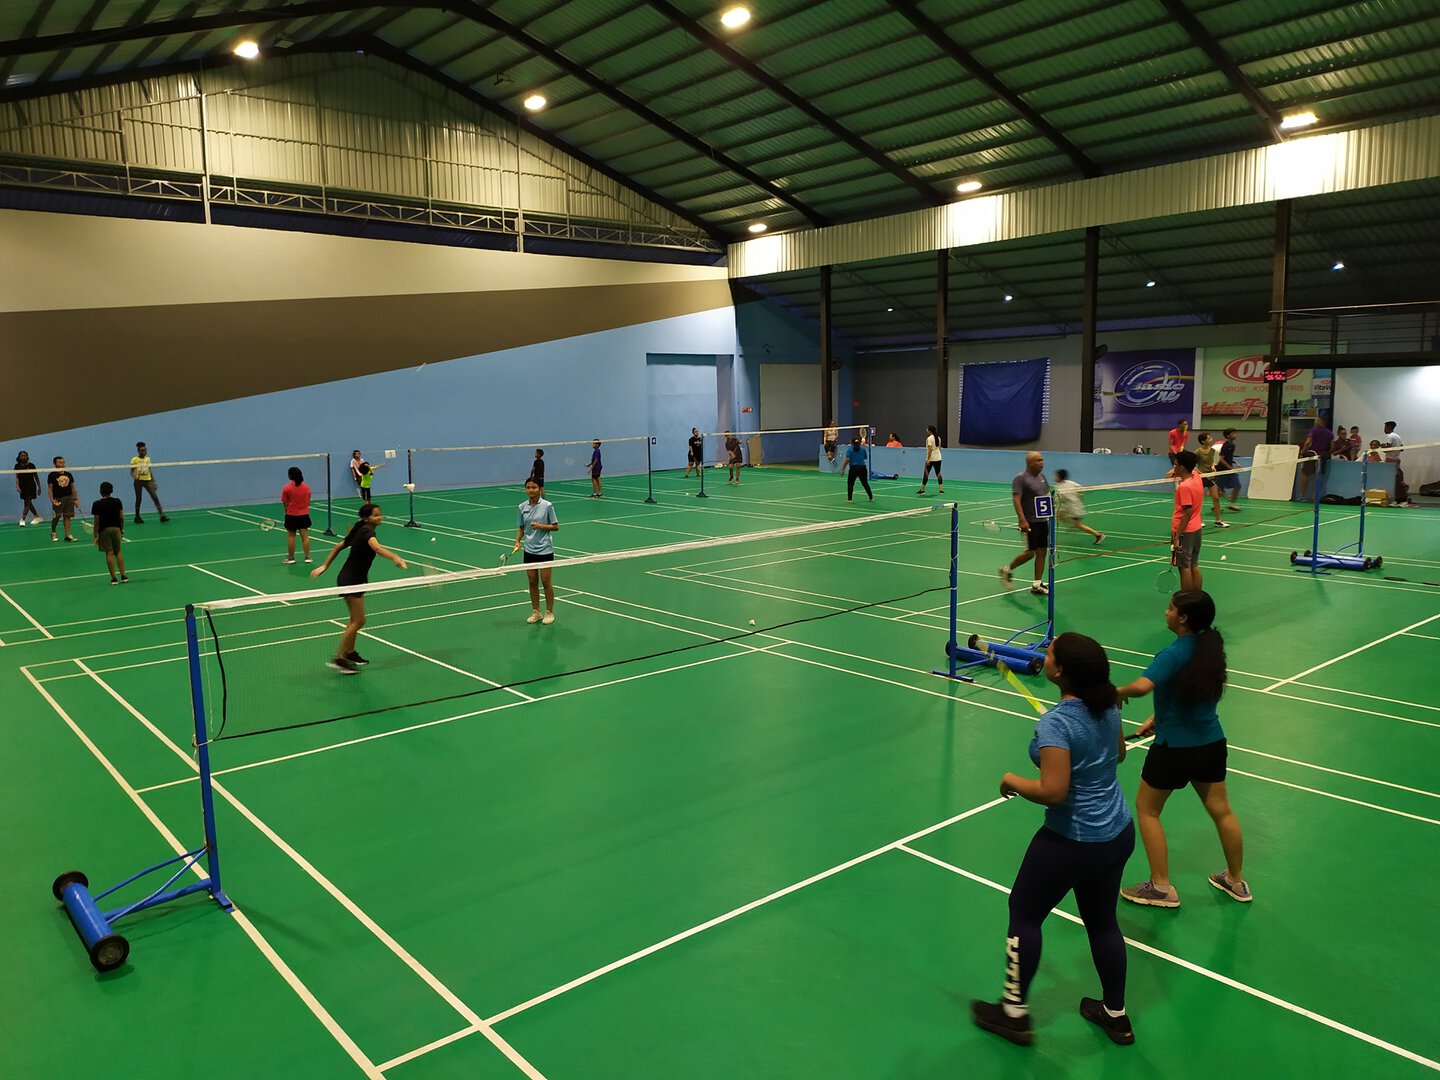 Badminton Club ClearShot